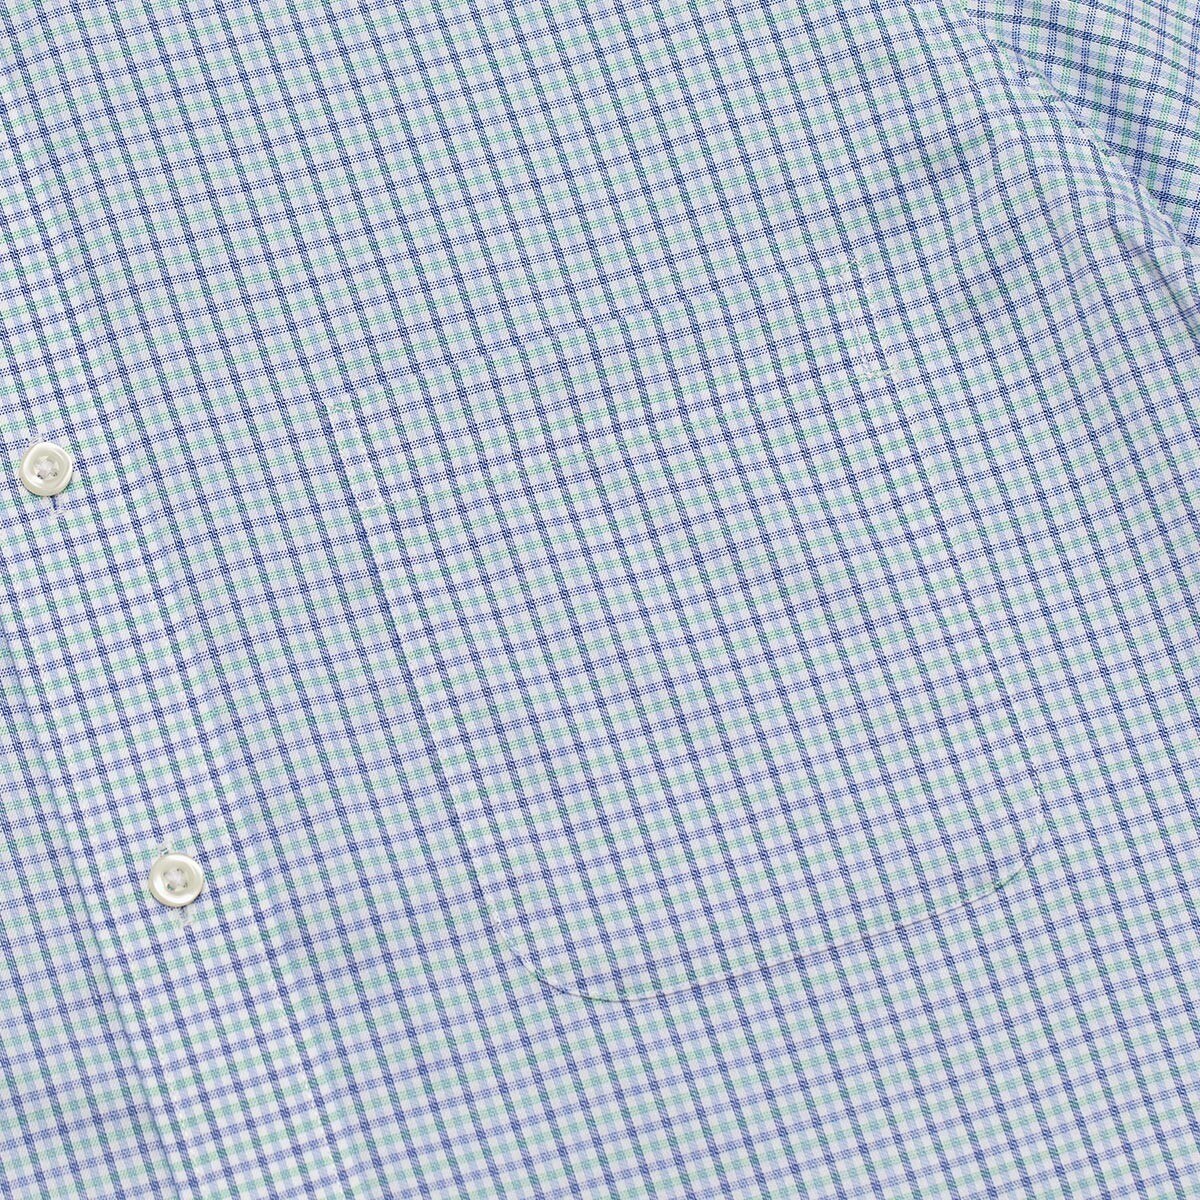 Kirkland Signature 科克蘭 男短袖鈕扣領免燙彈性襯衫 淺藍 XL